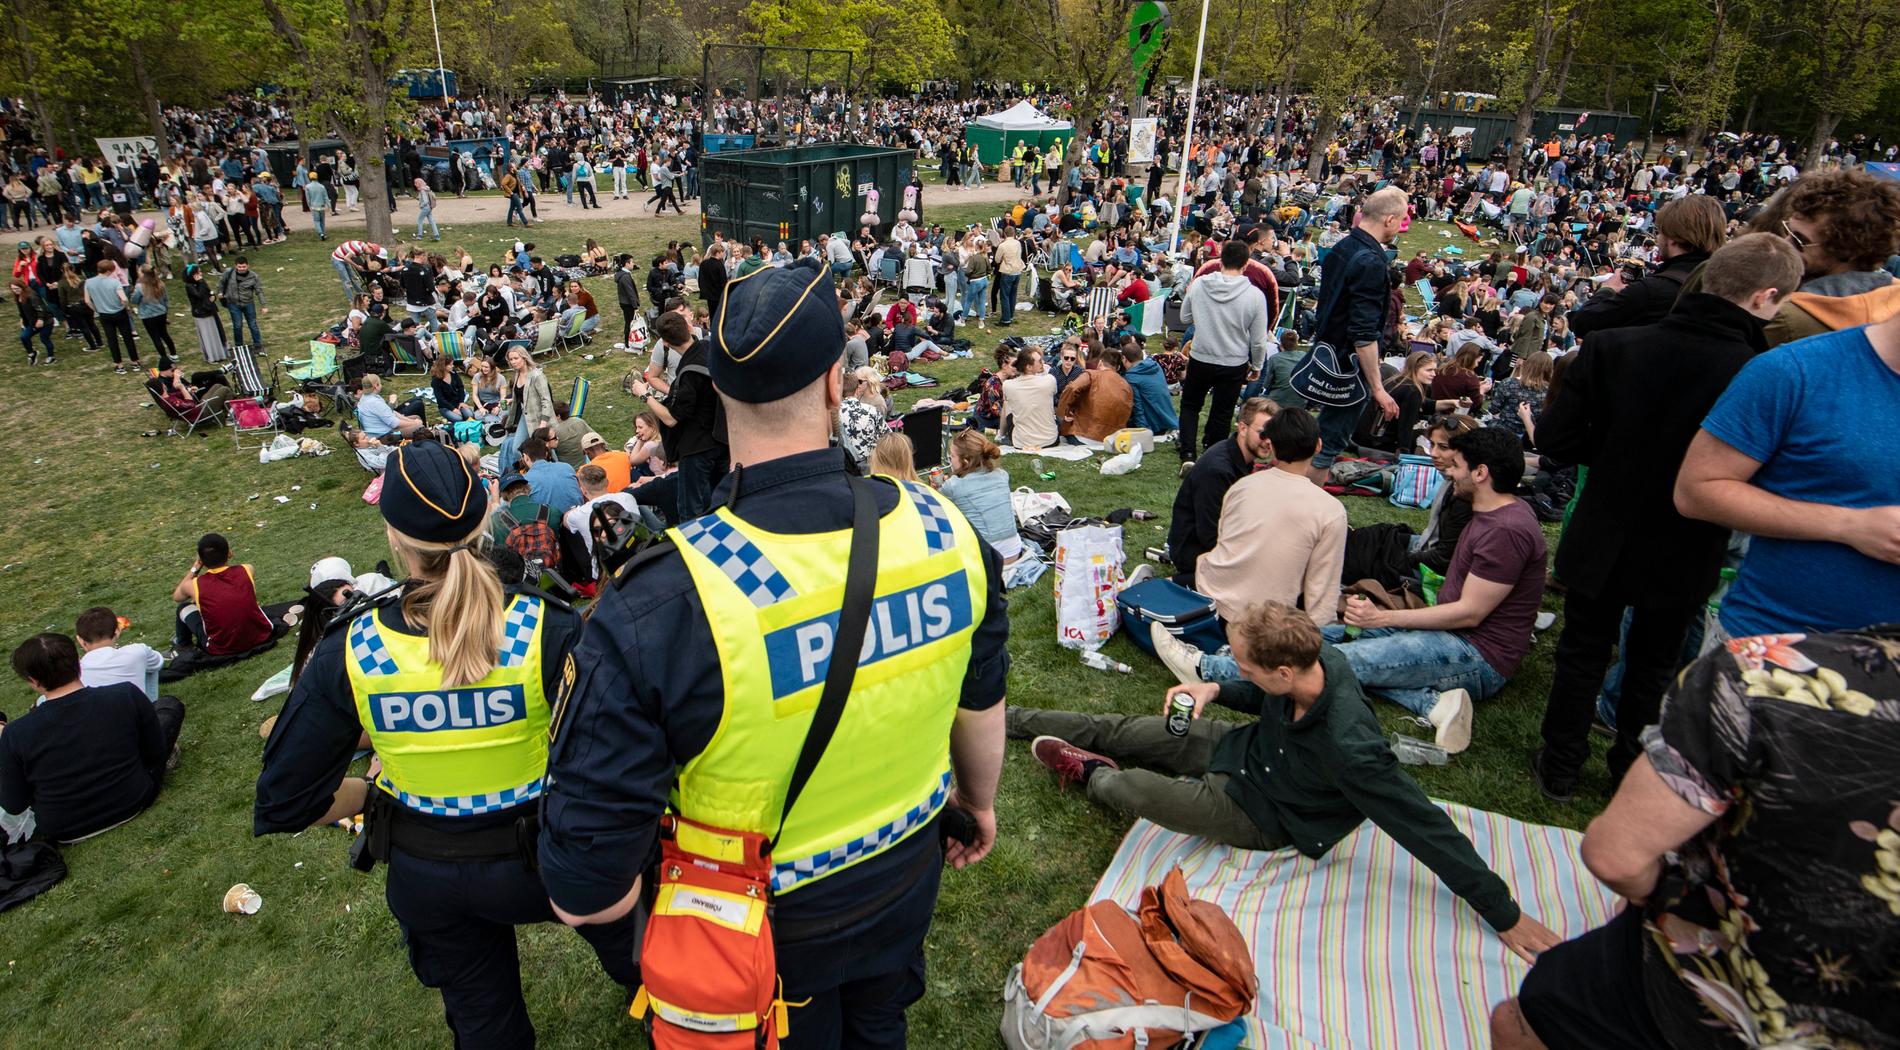 Det blir inget vanligt valborgsfirande i år. Bilden här är från Stadsparken i Lund 2019.